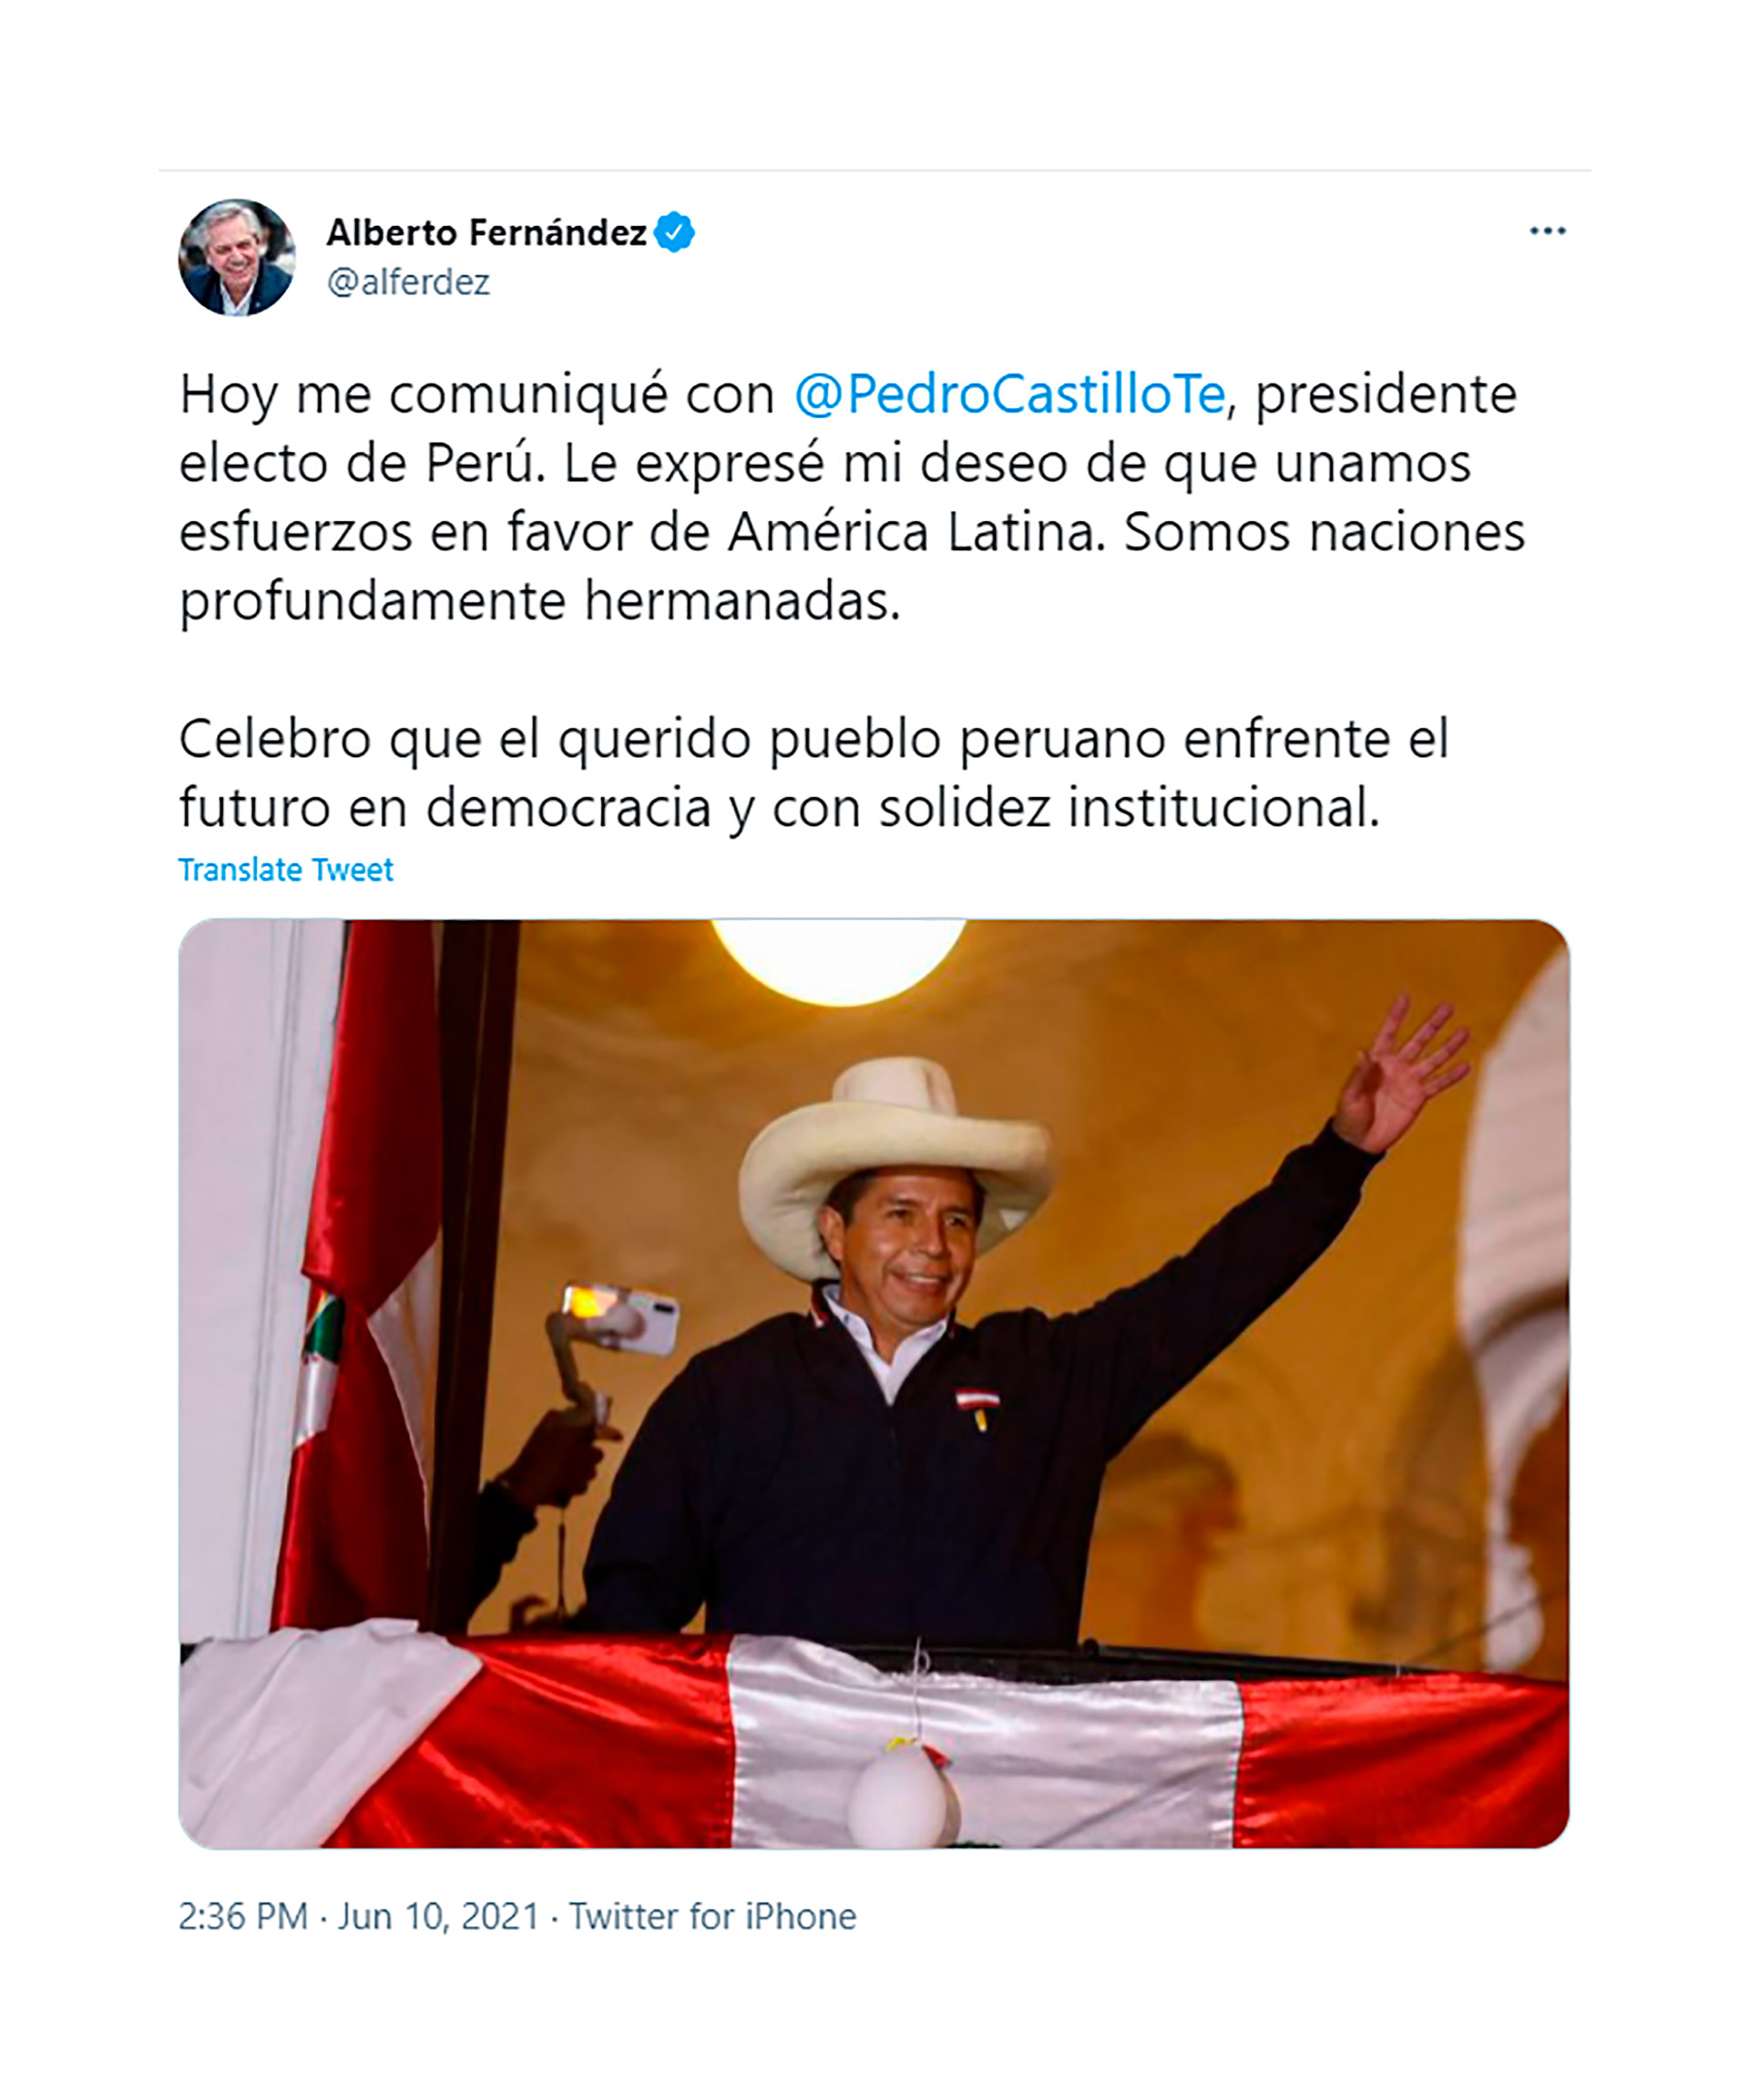 El tuit del presidente argentino Alberto Fernández este jueves